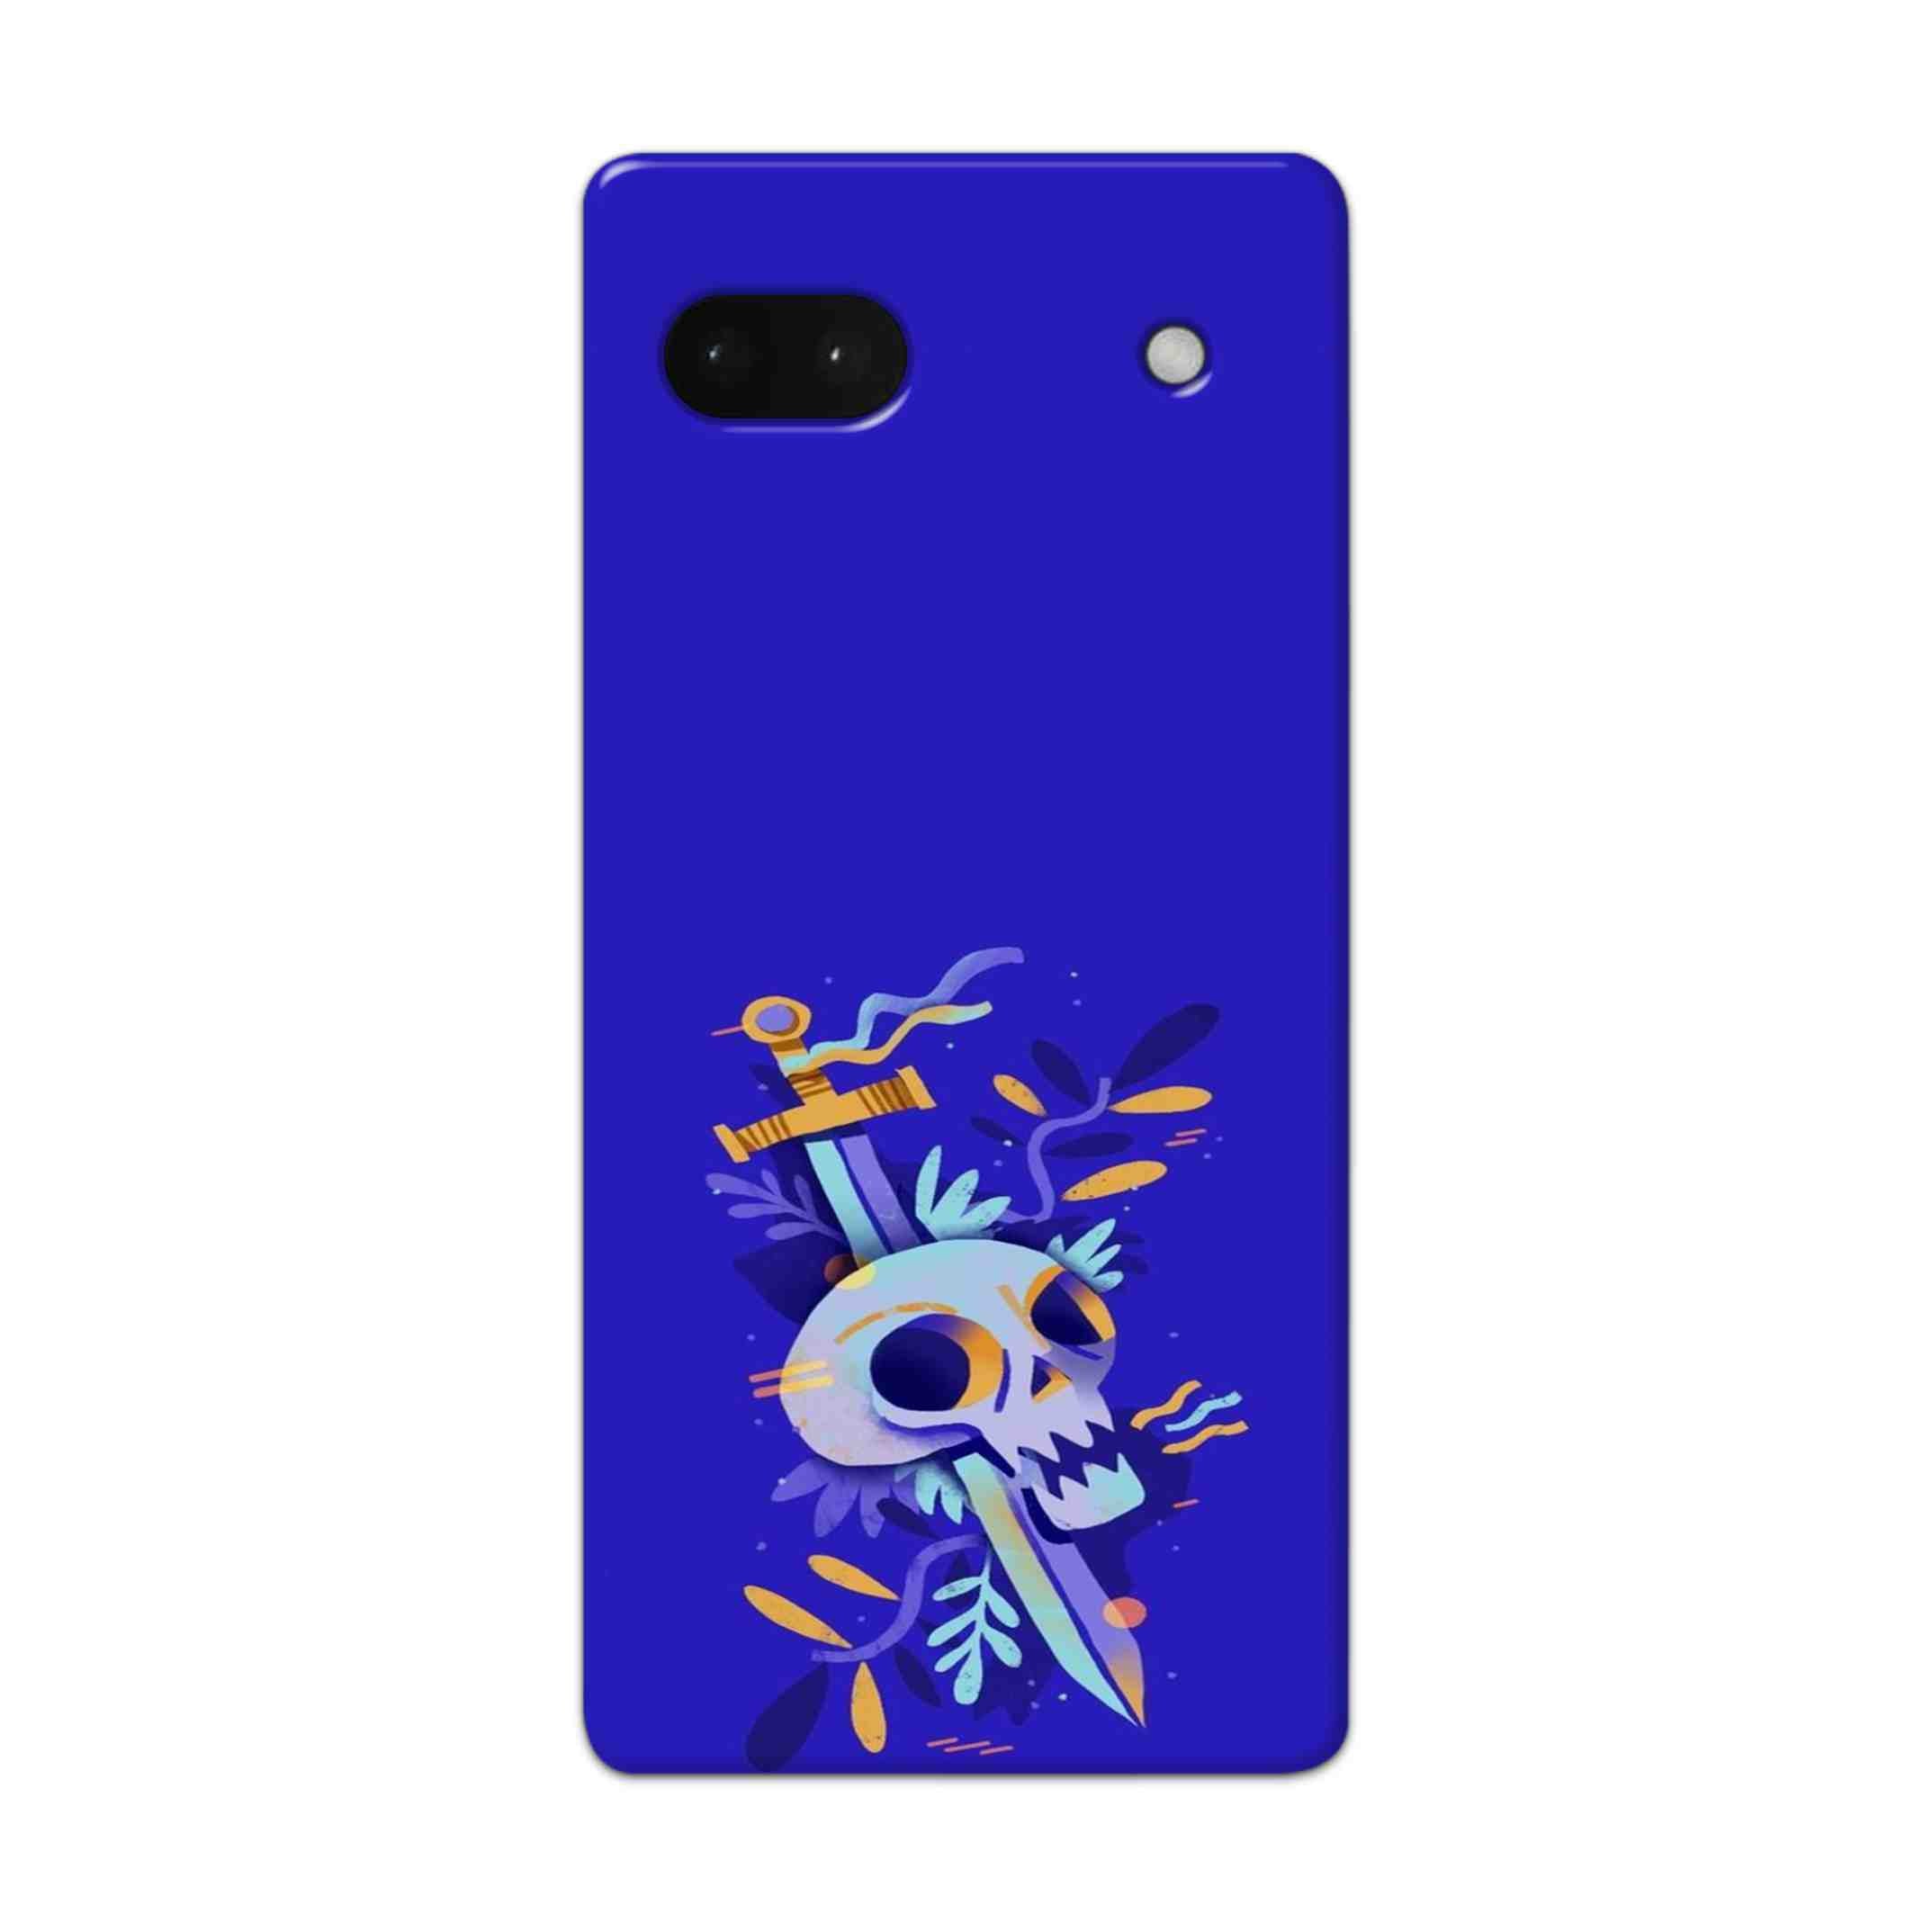 Buy Blue Skull Hard Back Mobile Phone Case Cover For Google Pixel 6a Online